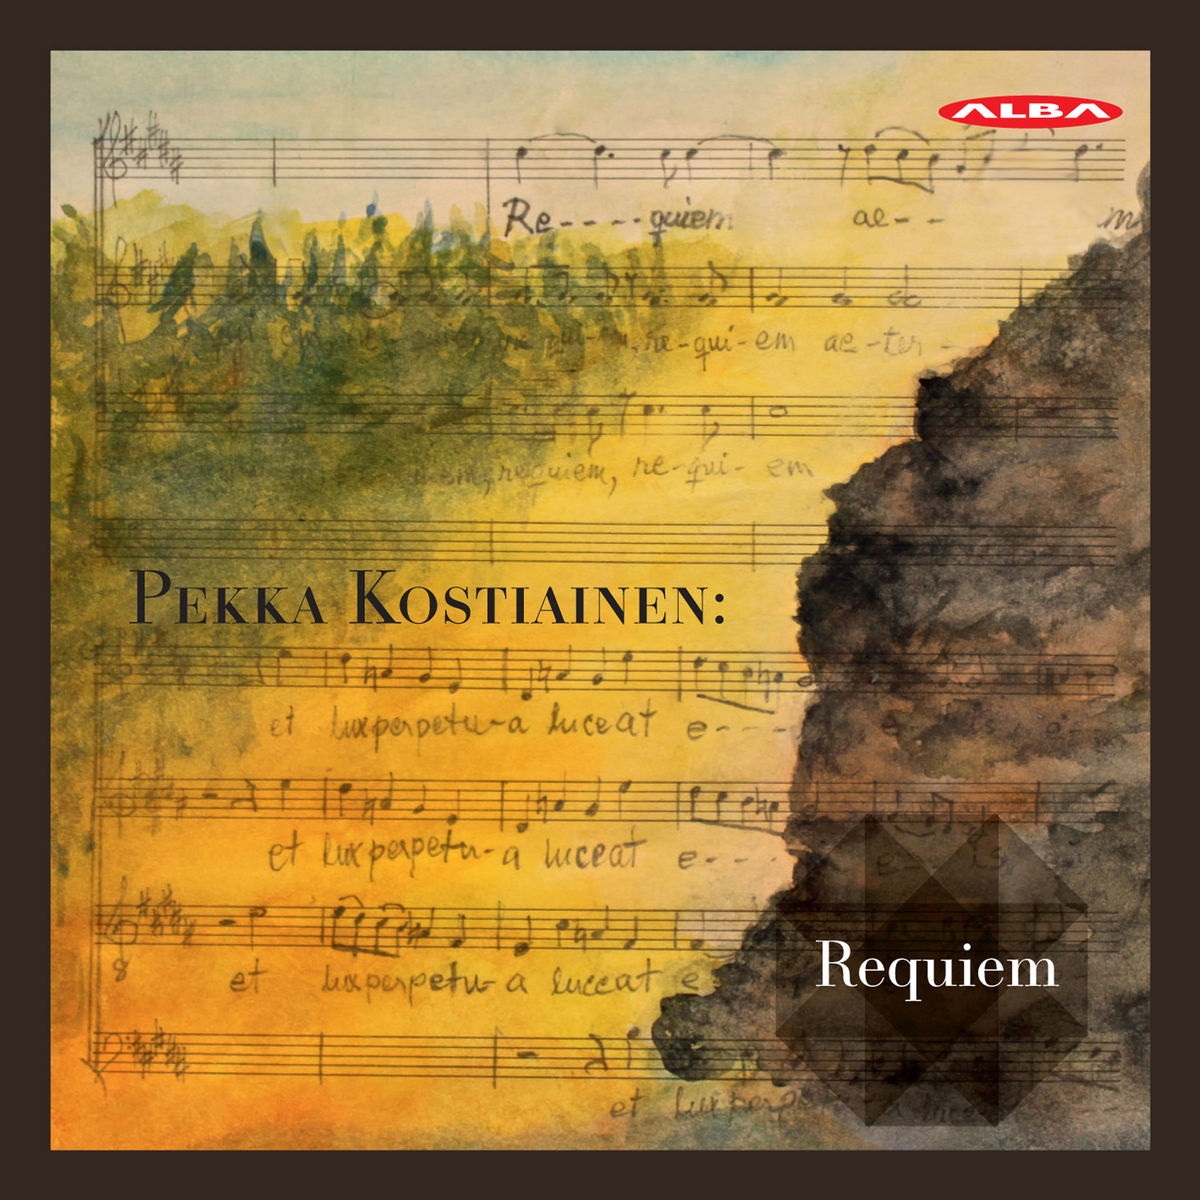 Mikkelin kaupunginorkesteri, Jyvaskyla Sinfonia & Ville Matvejeff – Pekka Kostiainen: Triduum Paschale (2020) [FLAC 24bit/96kHz]